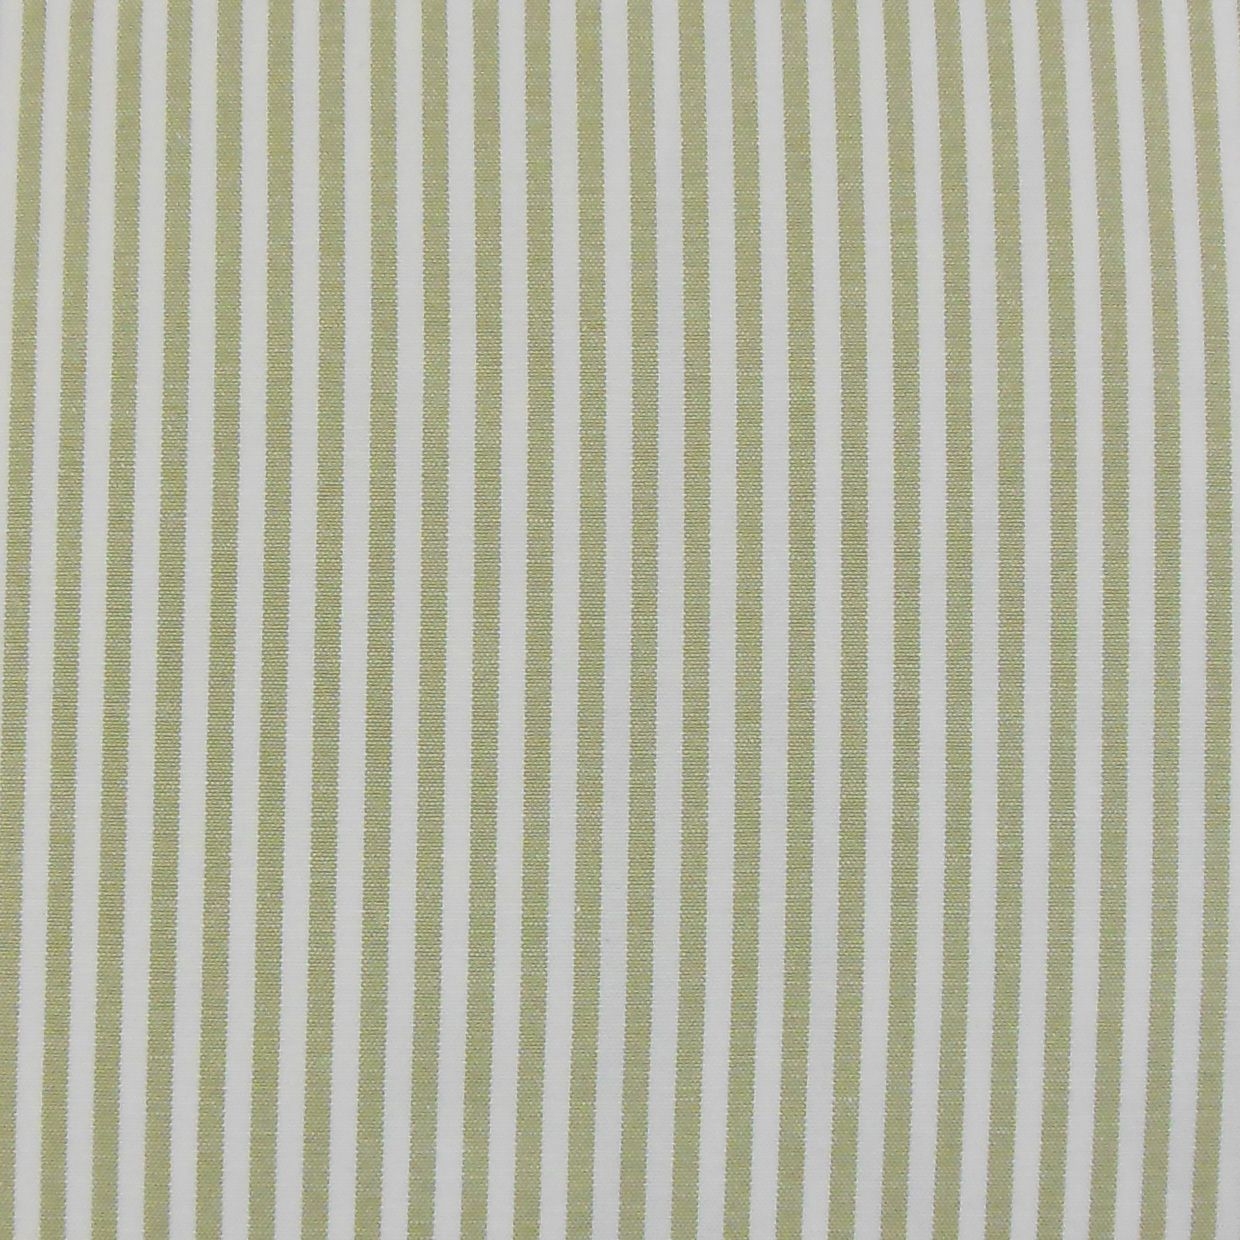 Classic Stripe Lumbar Pillow, Sage, 18" x 12" - Image 1